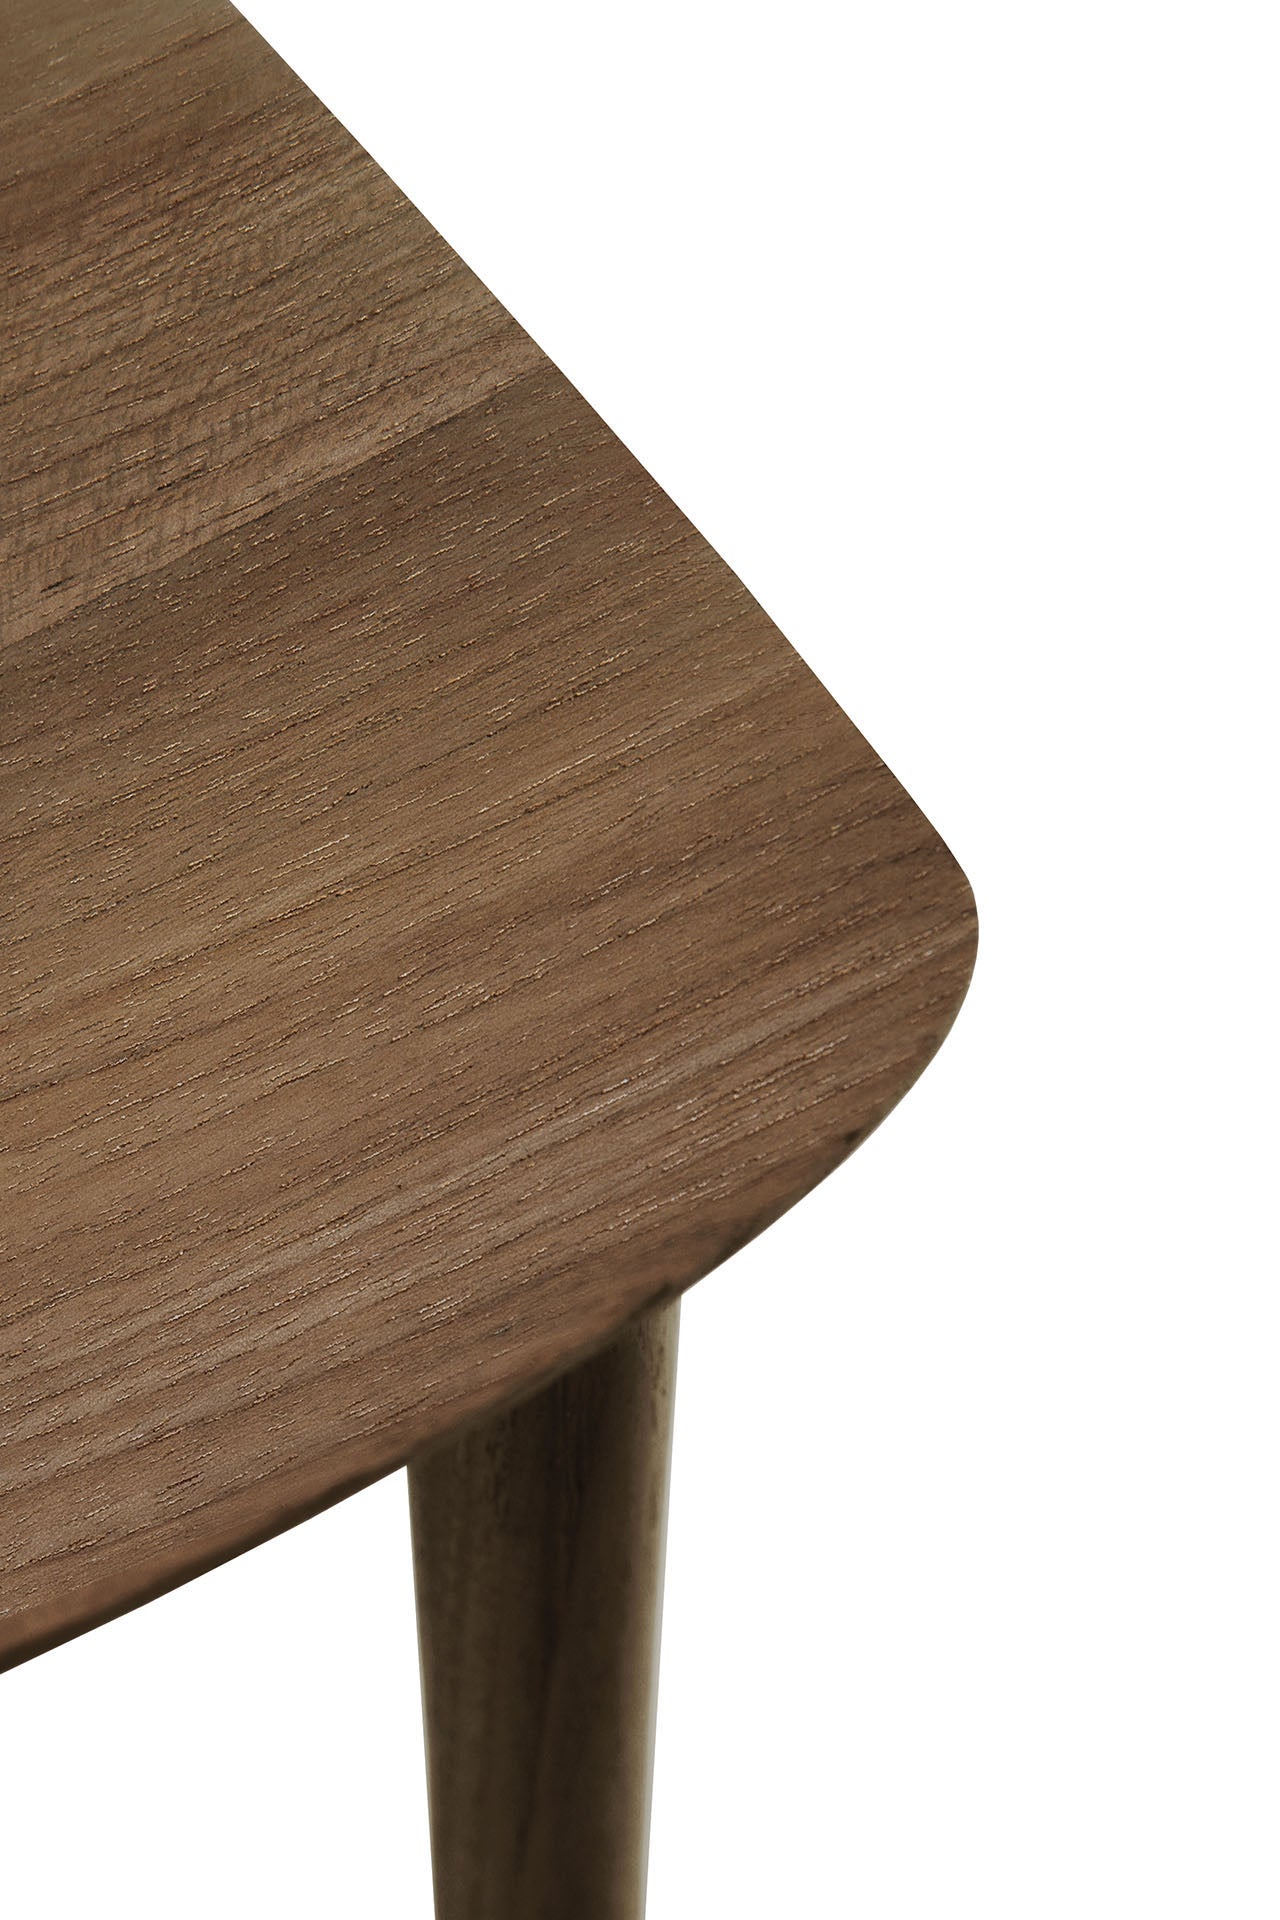 比利時原裝進口實木傢俬 - 座椅系列 - Bok系列柚木餐椅